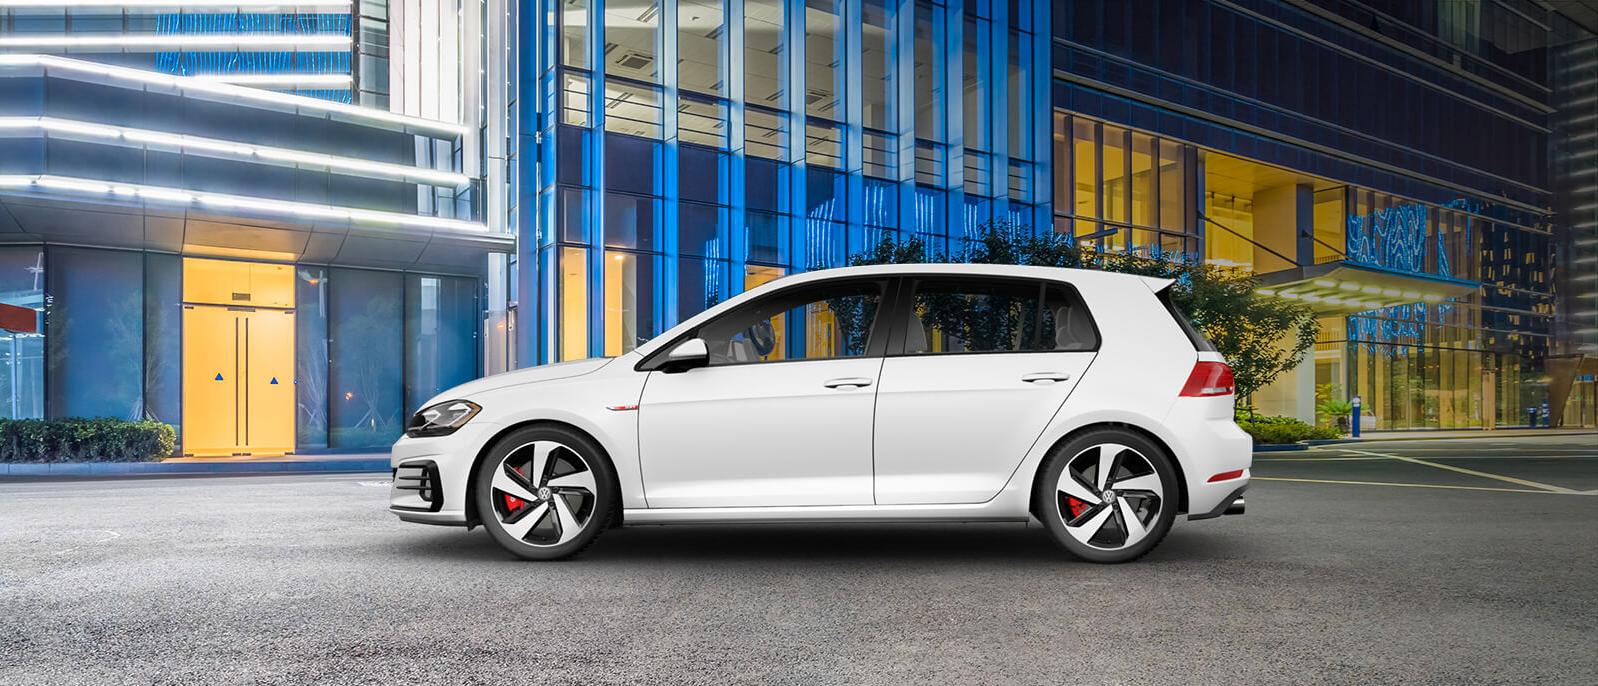 The New 2022 Volkswagen Golf GTI Has ...